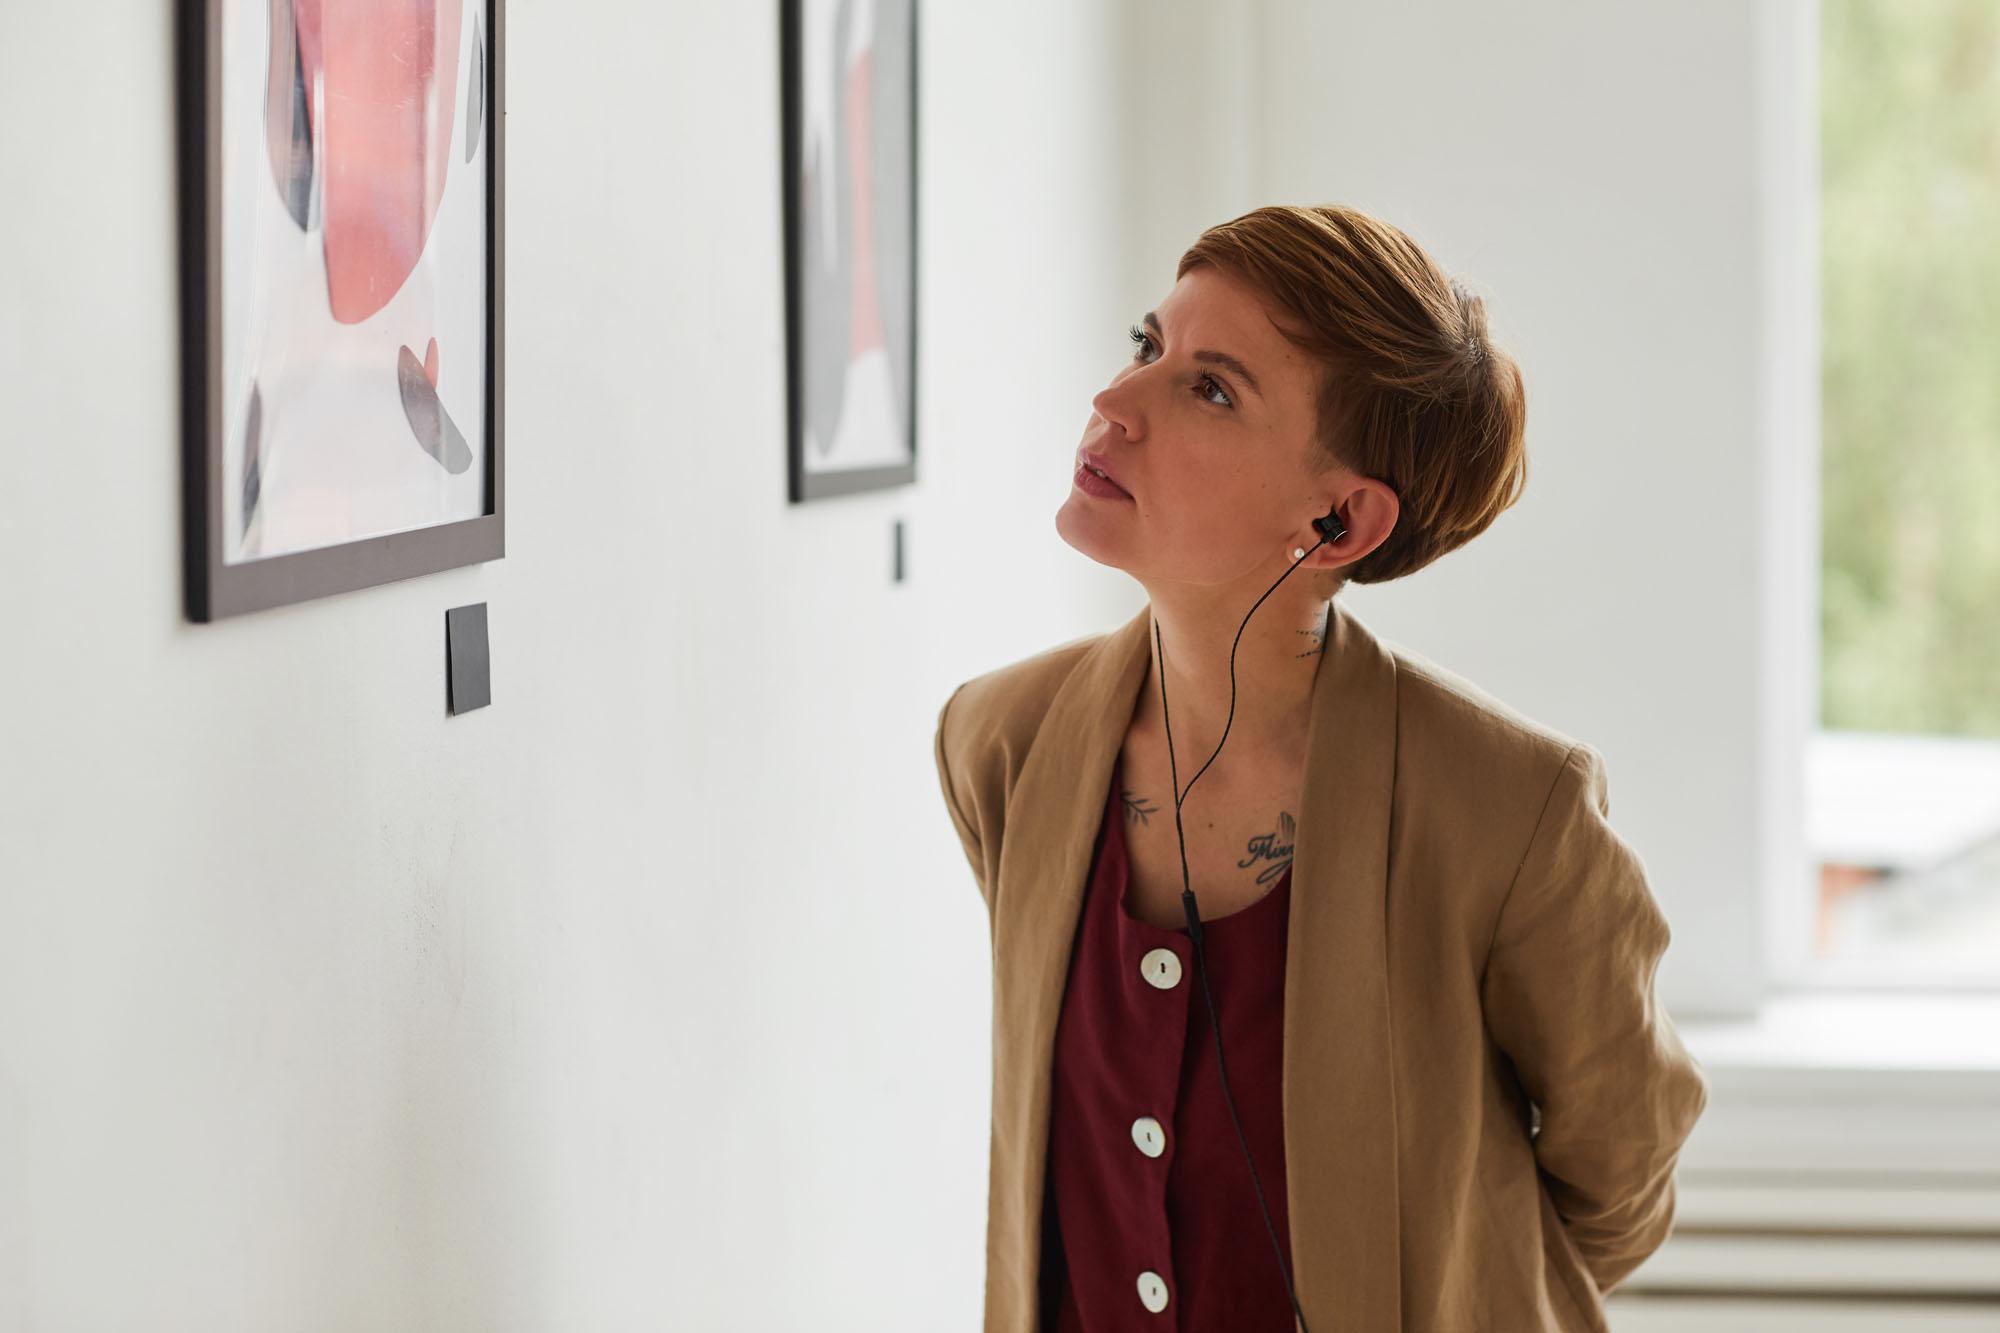 Een jonge vrouw in een museum luistert naar een audiogids terwijl ze een schilderij bestudeert. Ze heeft kort bruin haar en tatoeages in haar nek. Ze draagt een donkerrood shirt en een beige blazer.